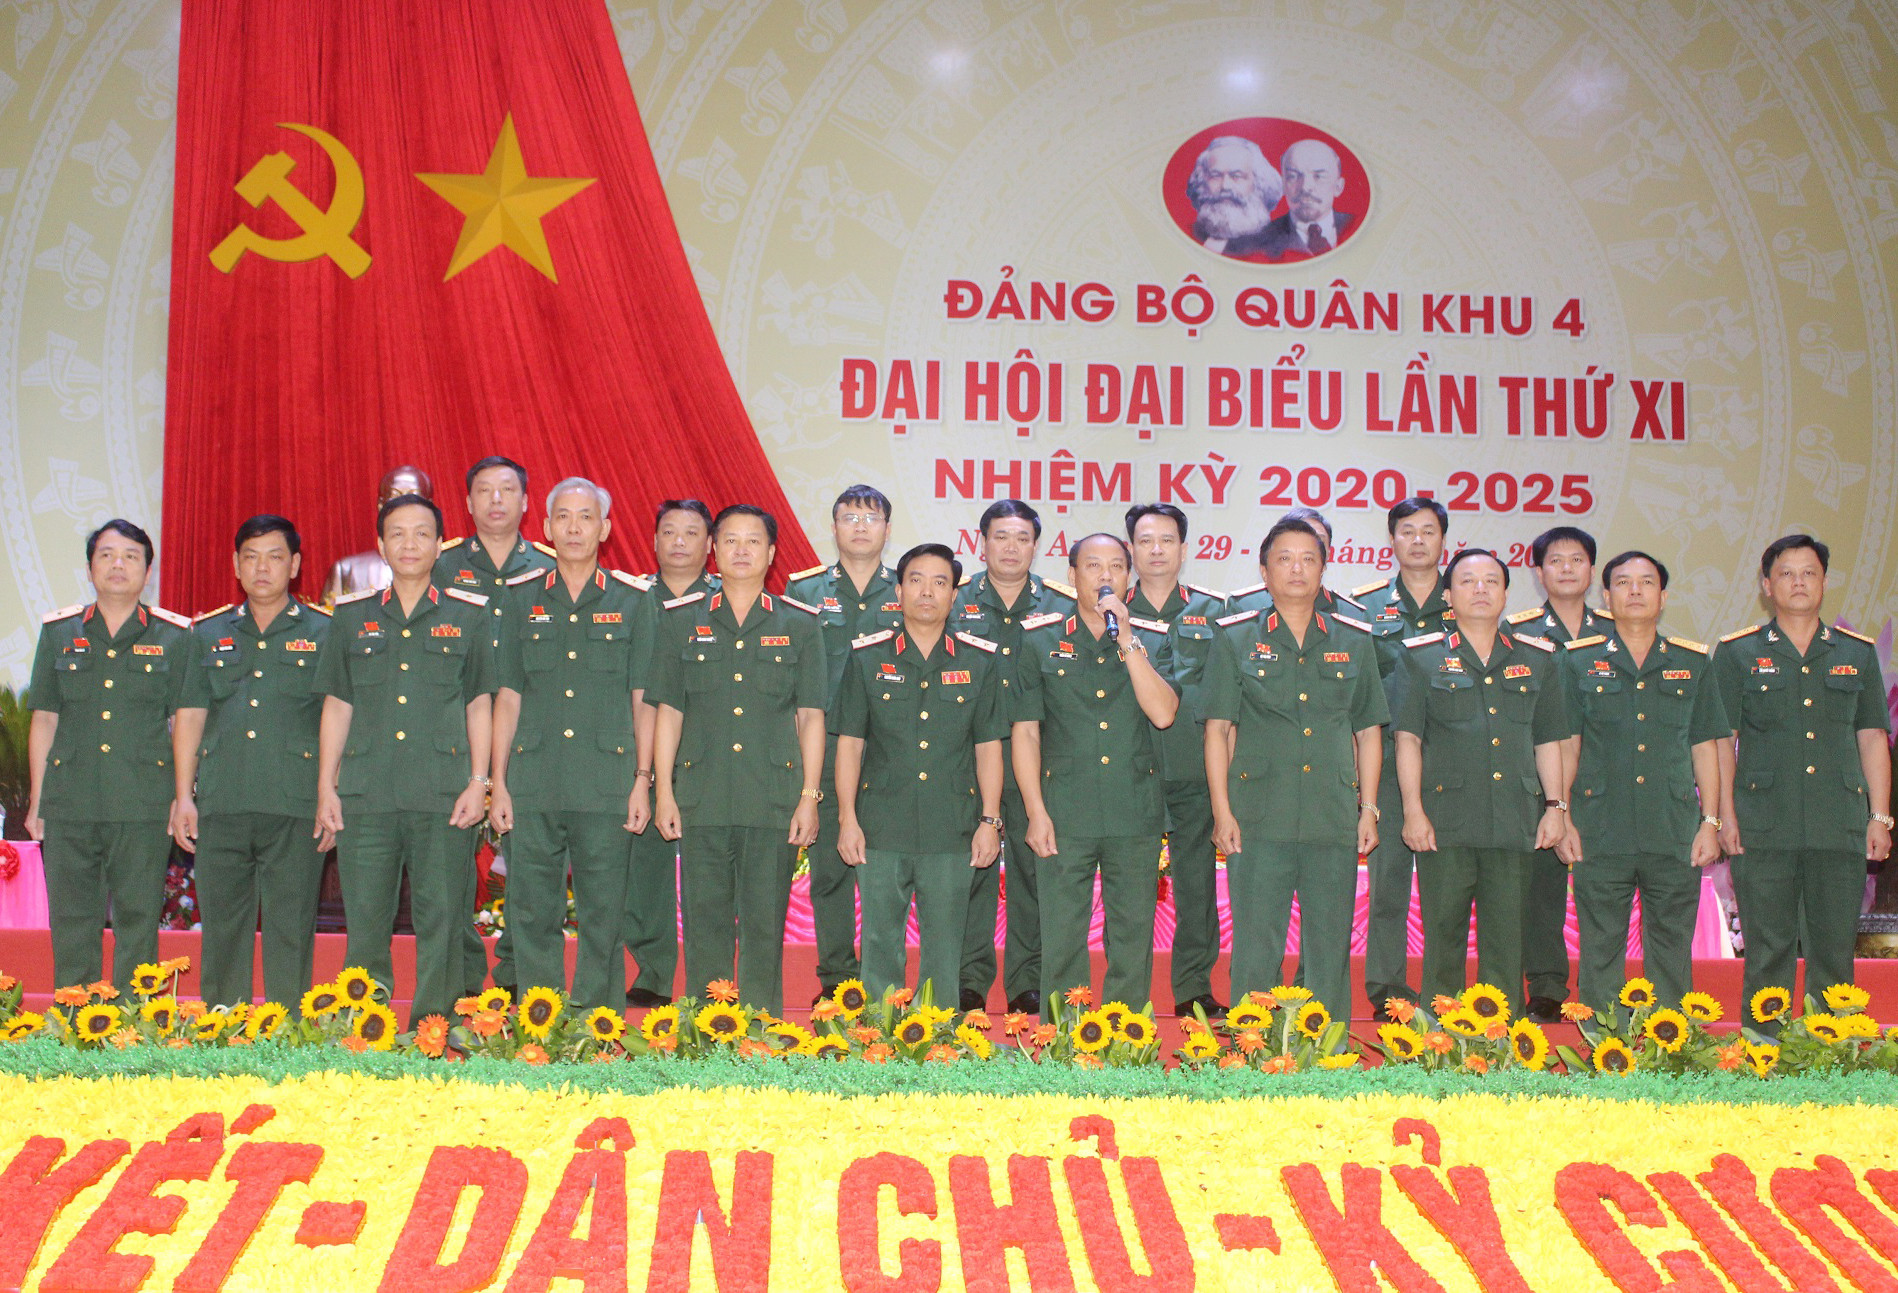 Ban Chấp hành Đảng bộ Quân khu 4 nhiệm kỳ 2020-2025 và đoàn đại biểu dự Đại hội Đảng bộ Quân đội lần thứ XI ra mắt đại hội